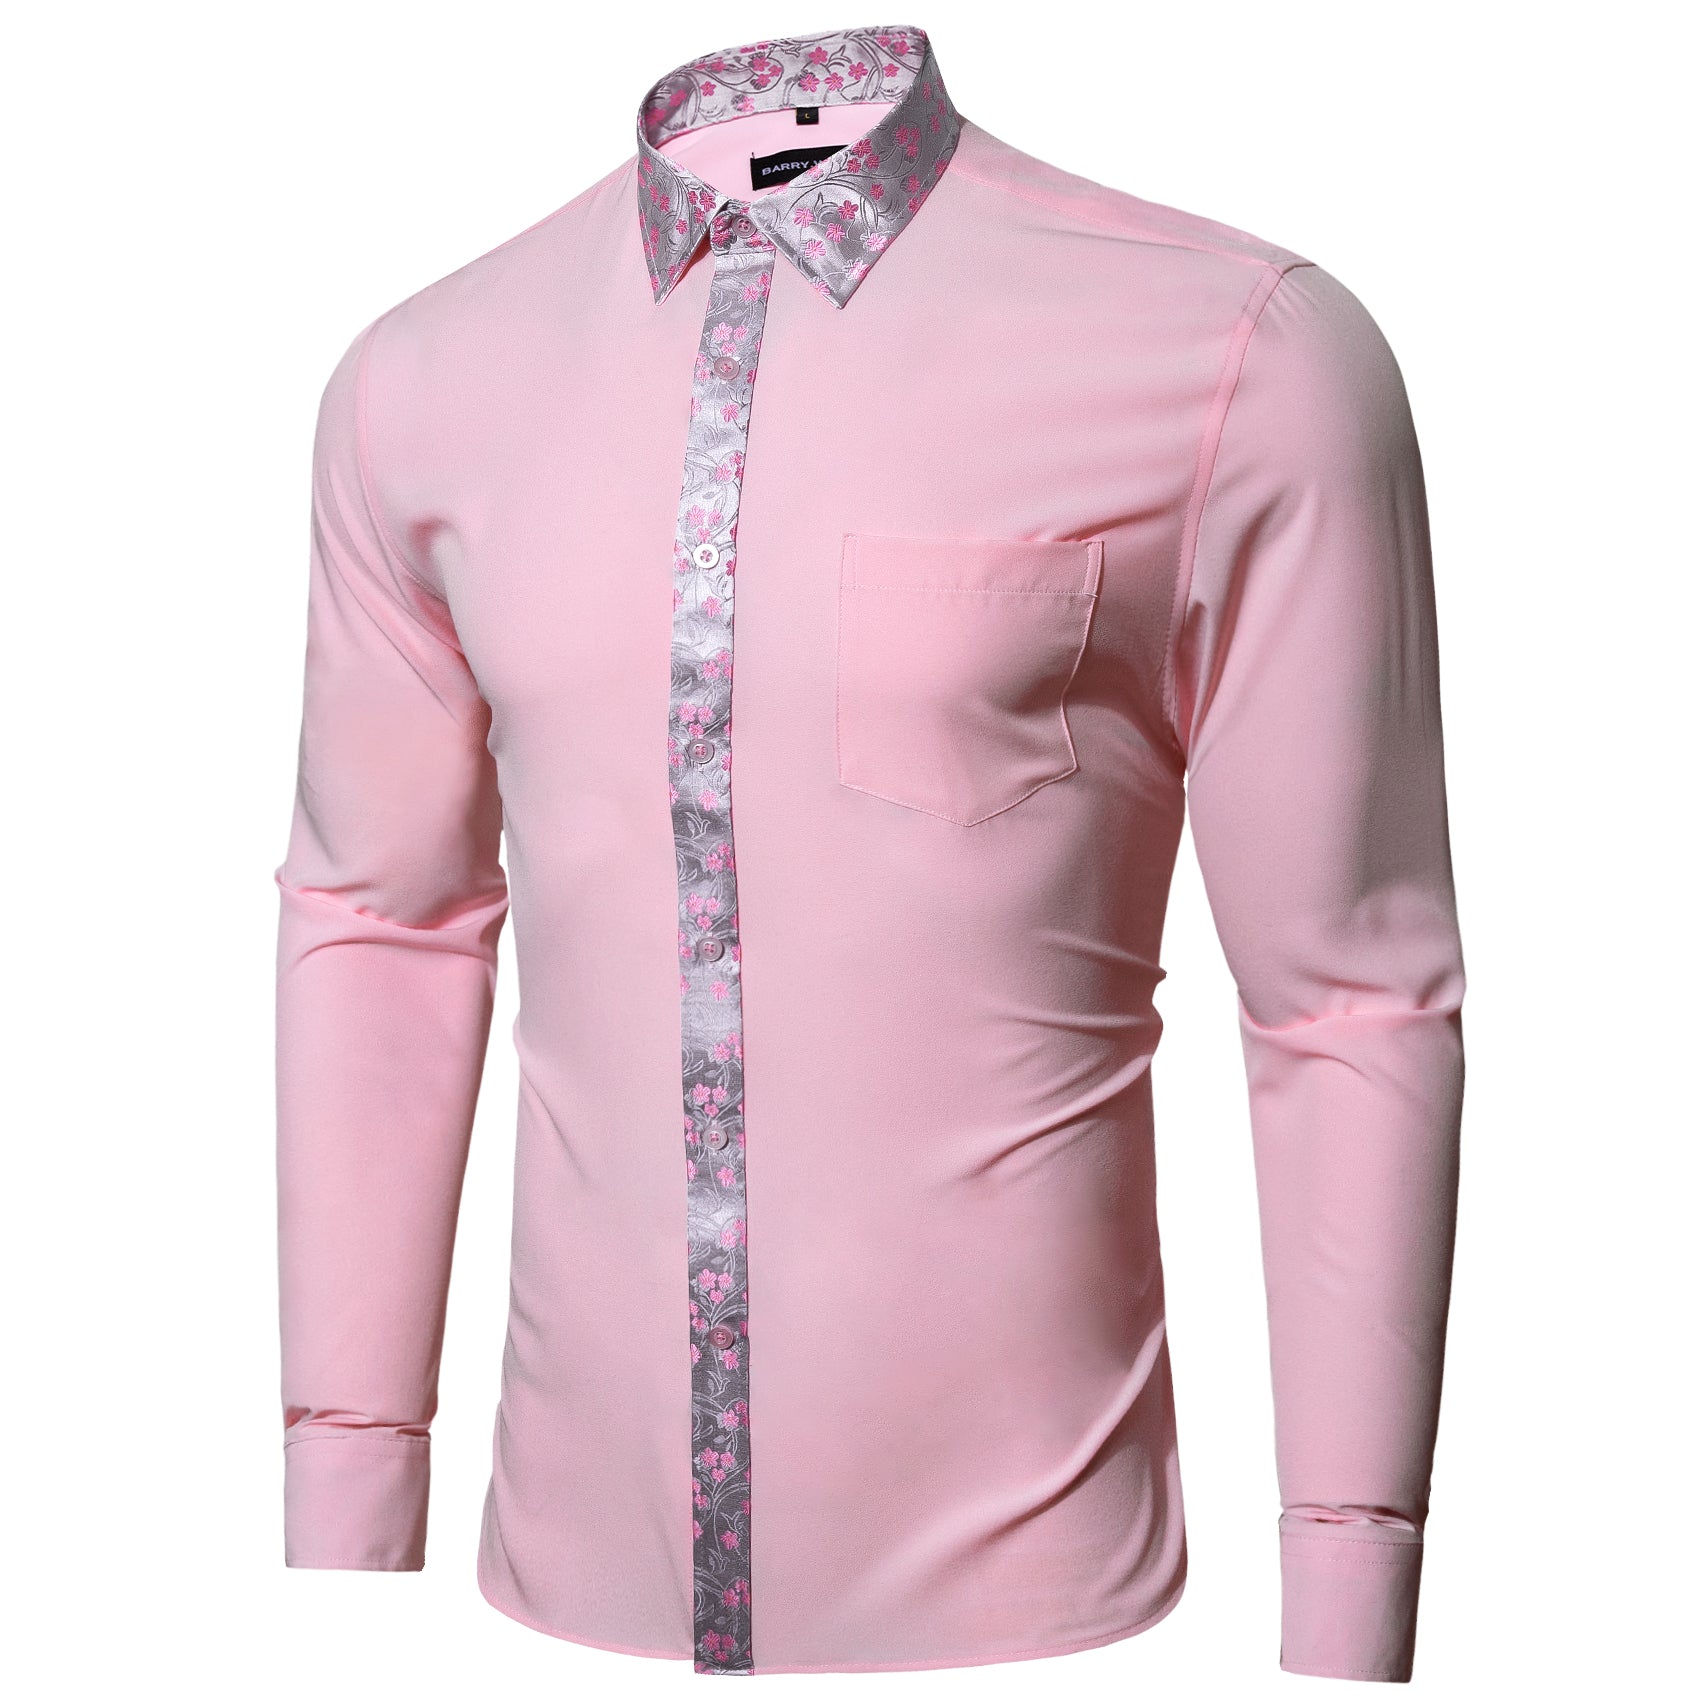 Barry.wang Pink Splicing Men's Business Shirt